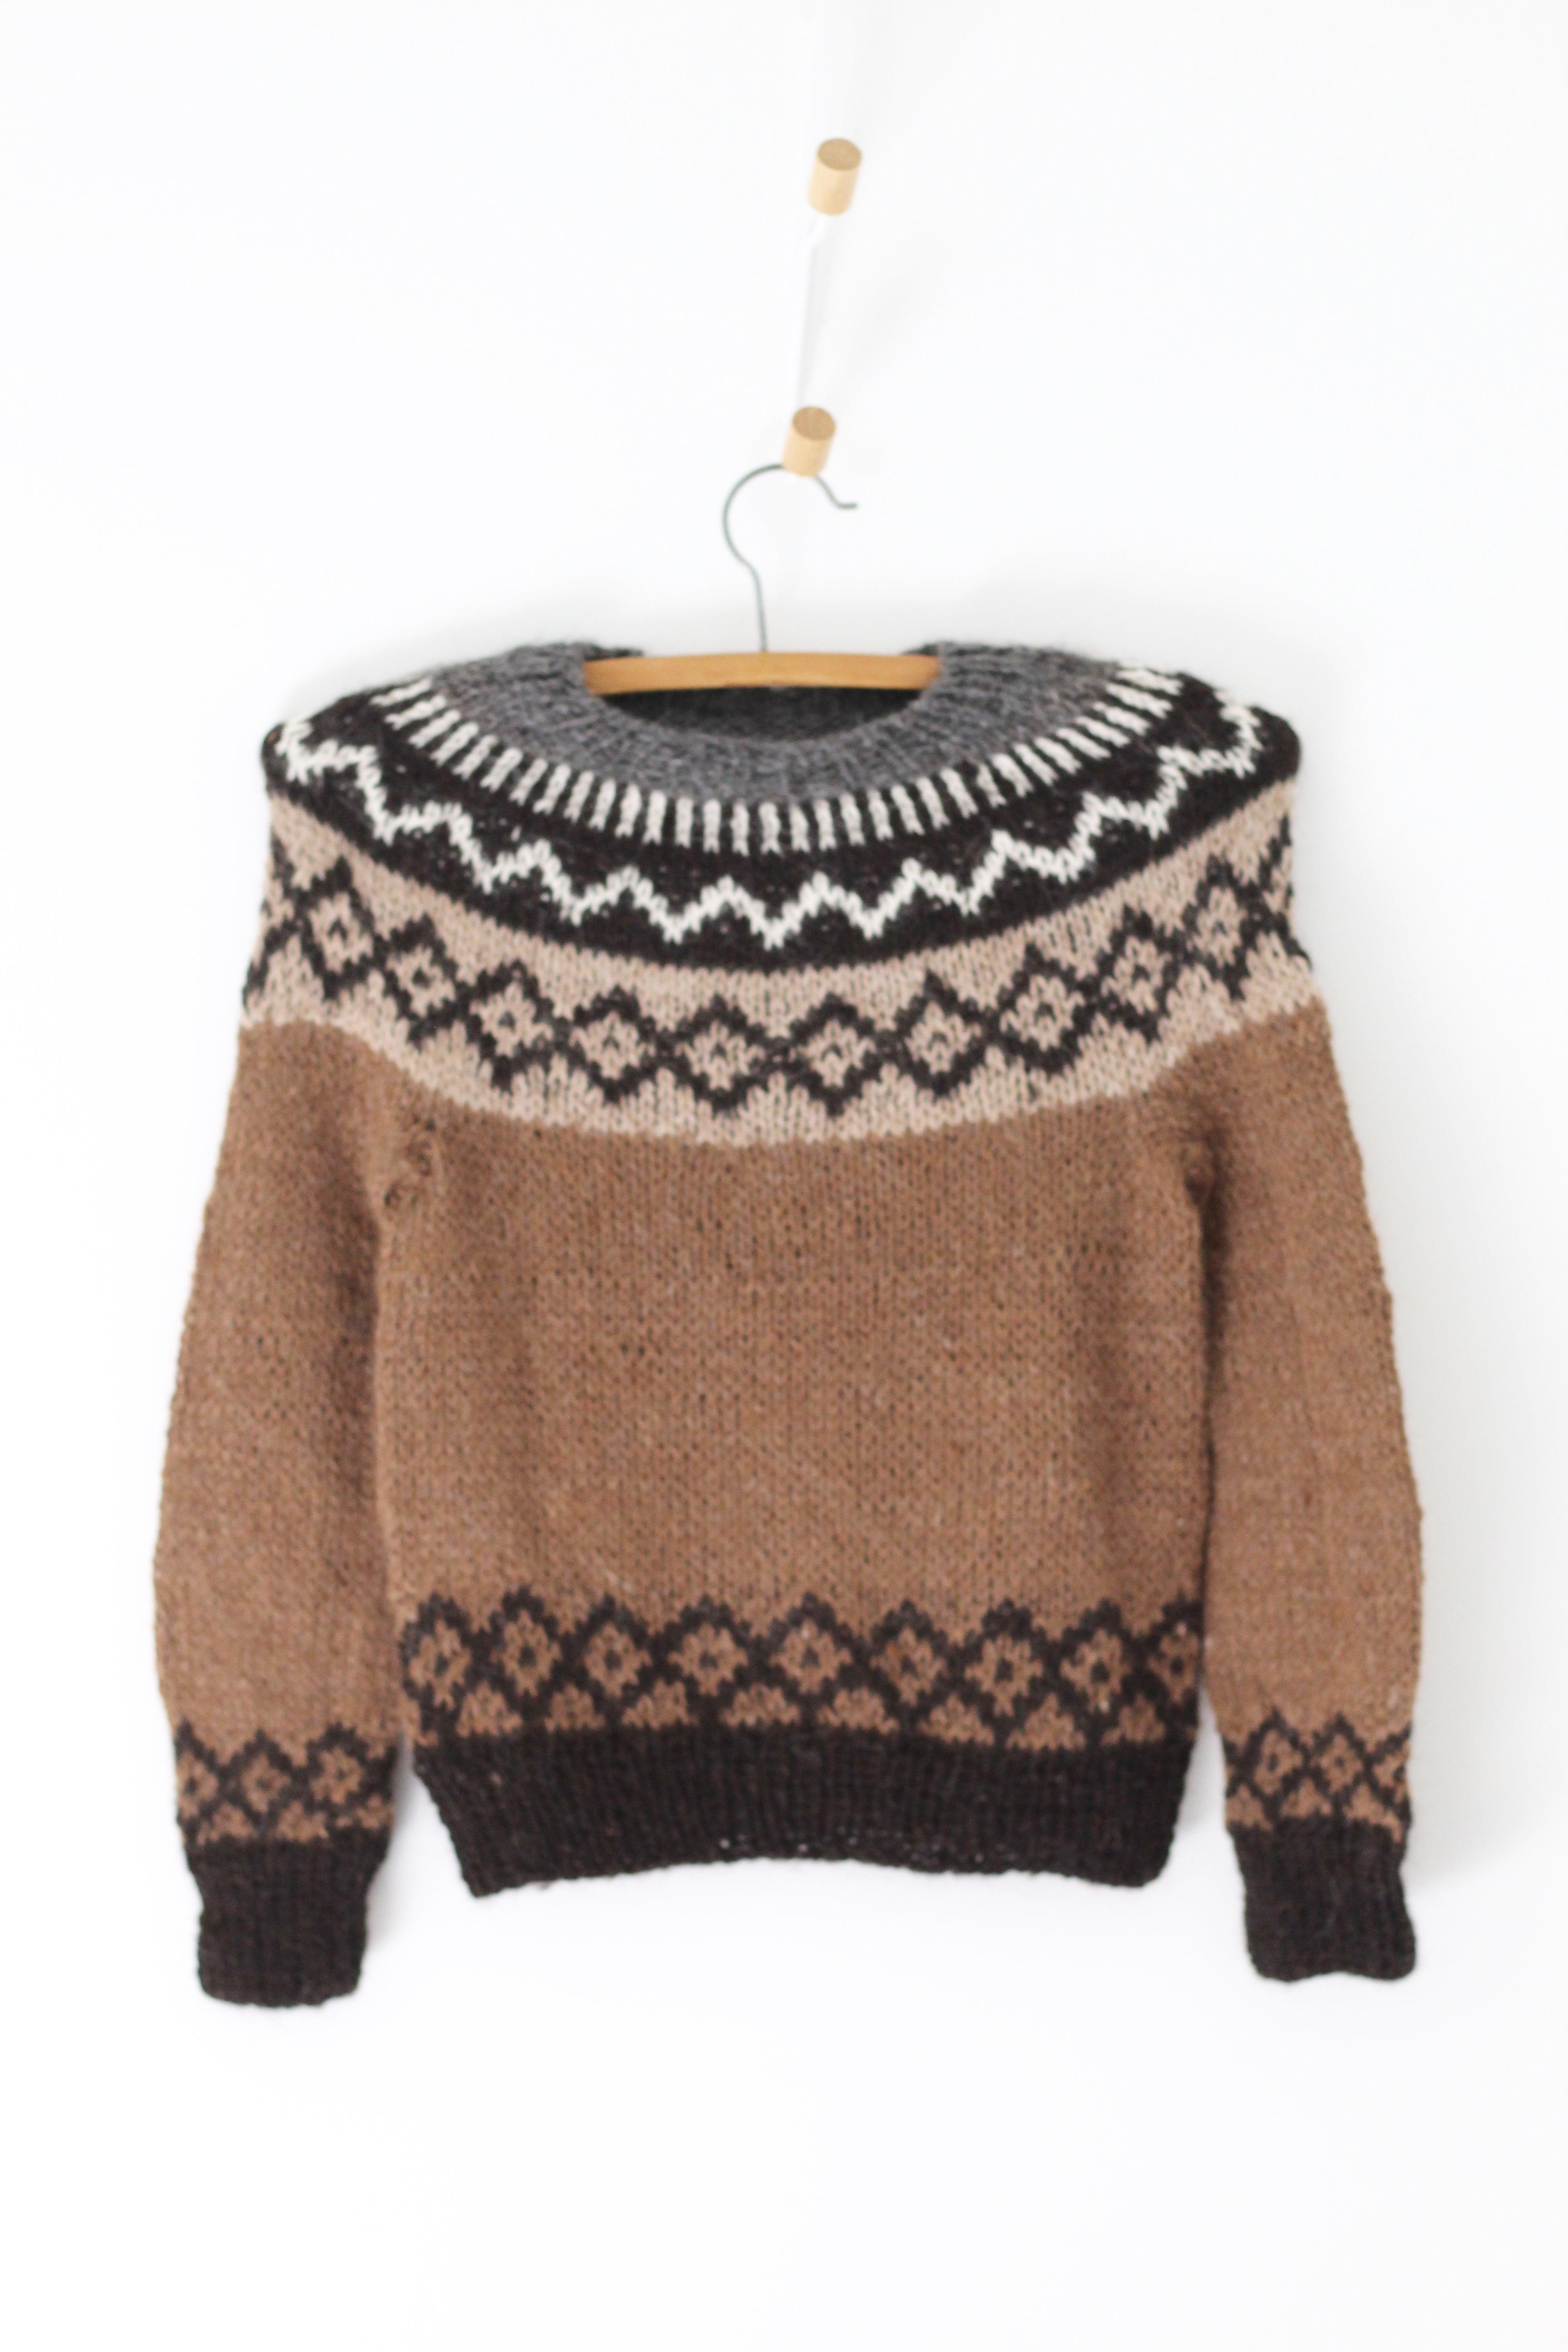 Hand Knitted Brown Andino Sweater - Casapacha